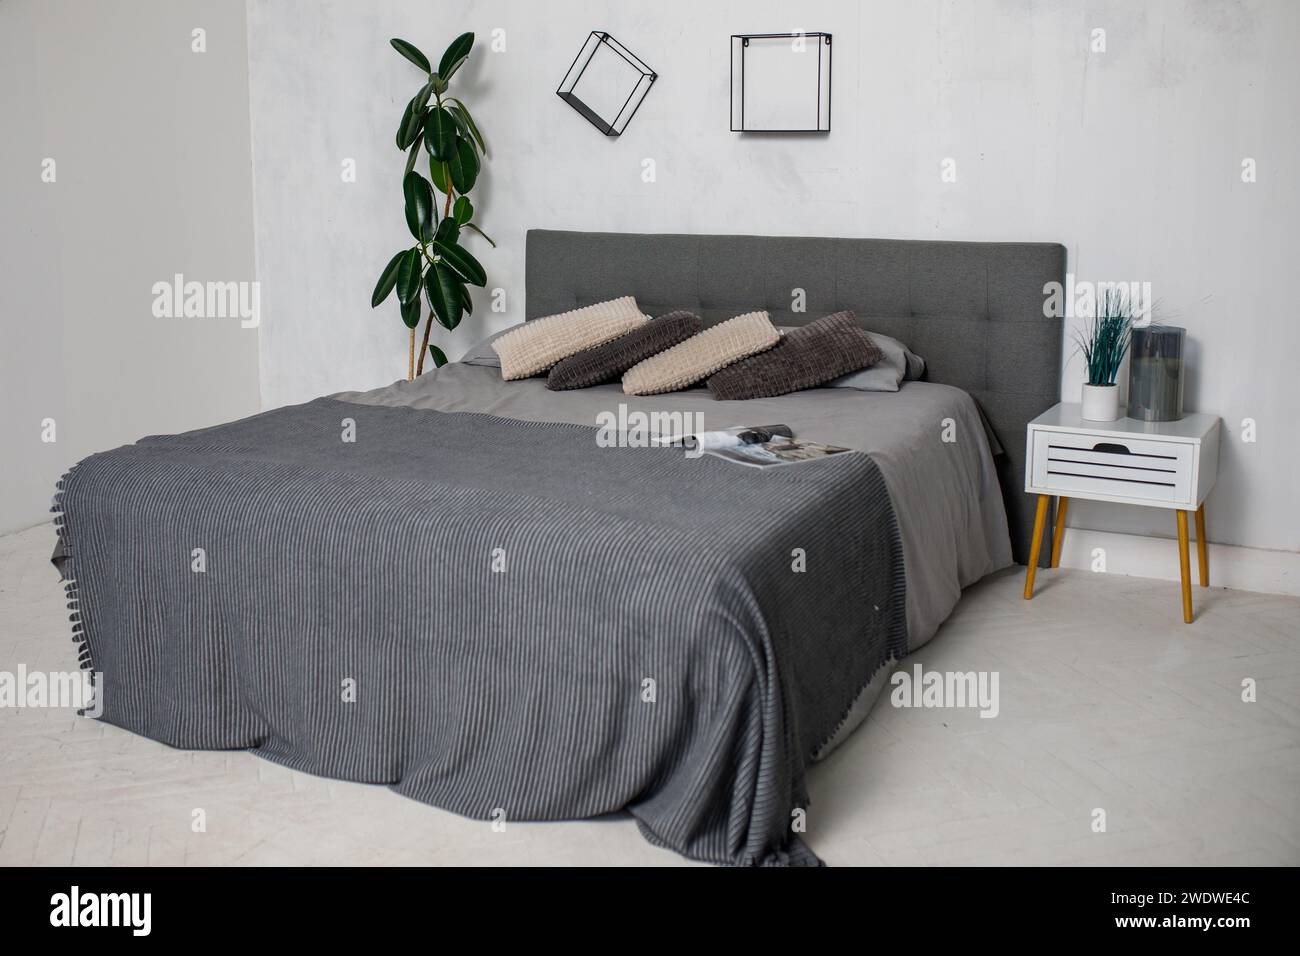 chambre, linge de lit gris dans la chambre. Photo de haute qualité Banque D'Images